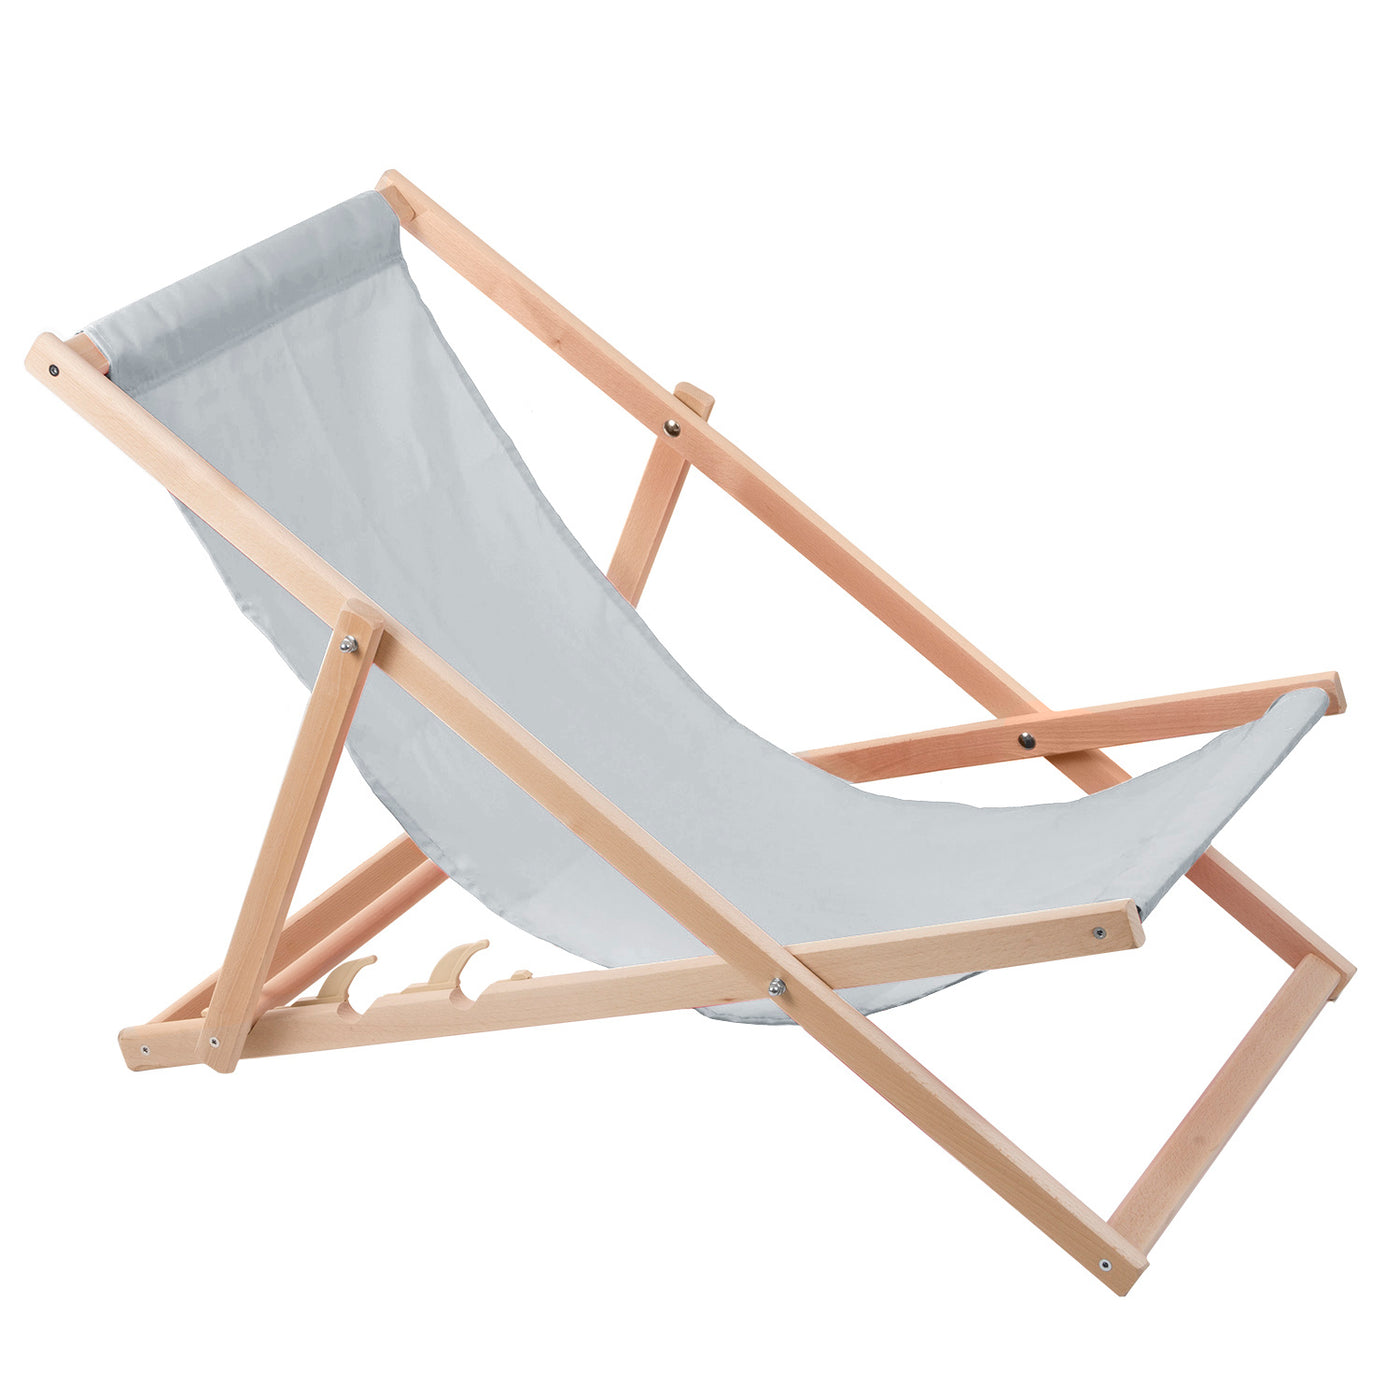 2 komfortowe leżaki z drewna, kolor jasny popiel, idealne na plażę, balkon, taras